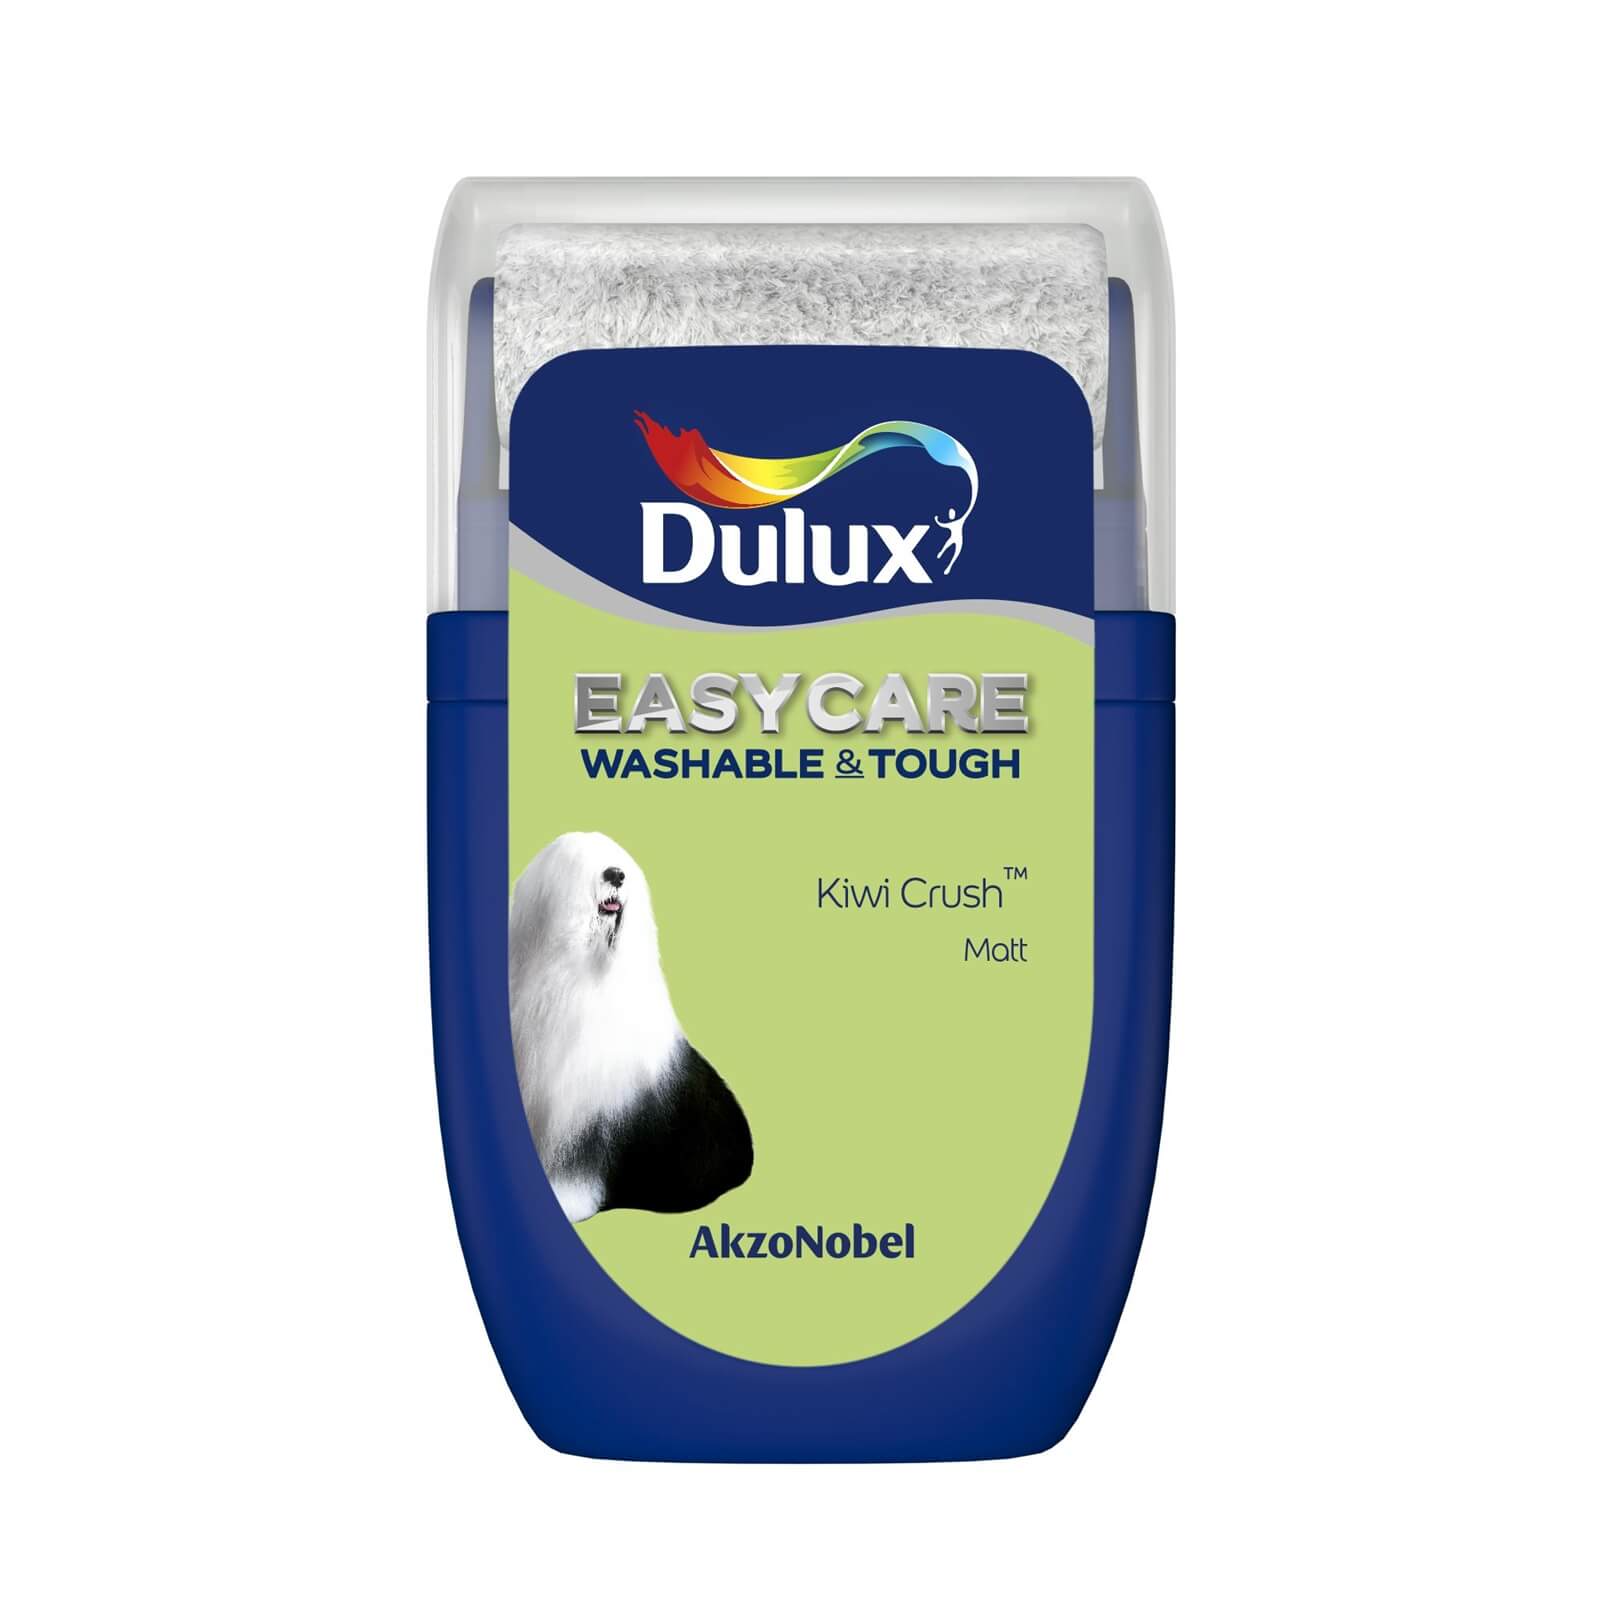 Dulux Easycare Washable & Tough Matt Paint Kiwi Crush - Tester 30ml